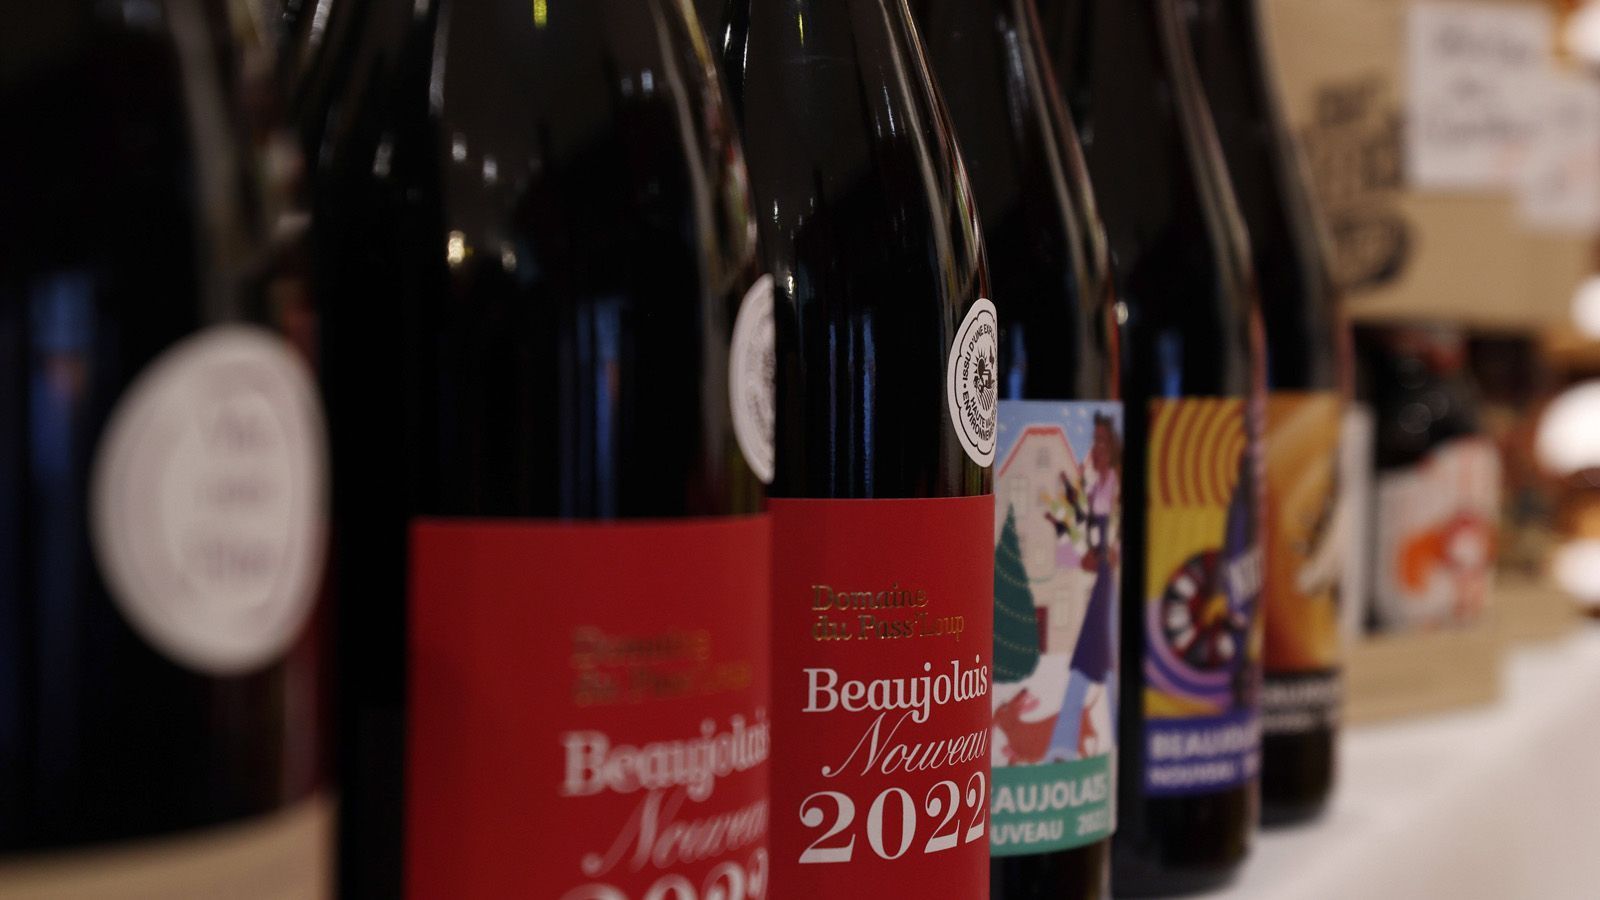 
                <strong>Wein</strong><br>
                Getrunken wird viel. Dabei aber mit Stil. Frankreich ist eines der bedeutendsten Weinbaugebiete und der größte Weinerzeuger der Welt. Bordeaux, Burgund, Chardonnay, Merlot oder Cabernet Sauvignon - wer braucht schon billiges Bier? A votre santé!
              